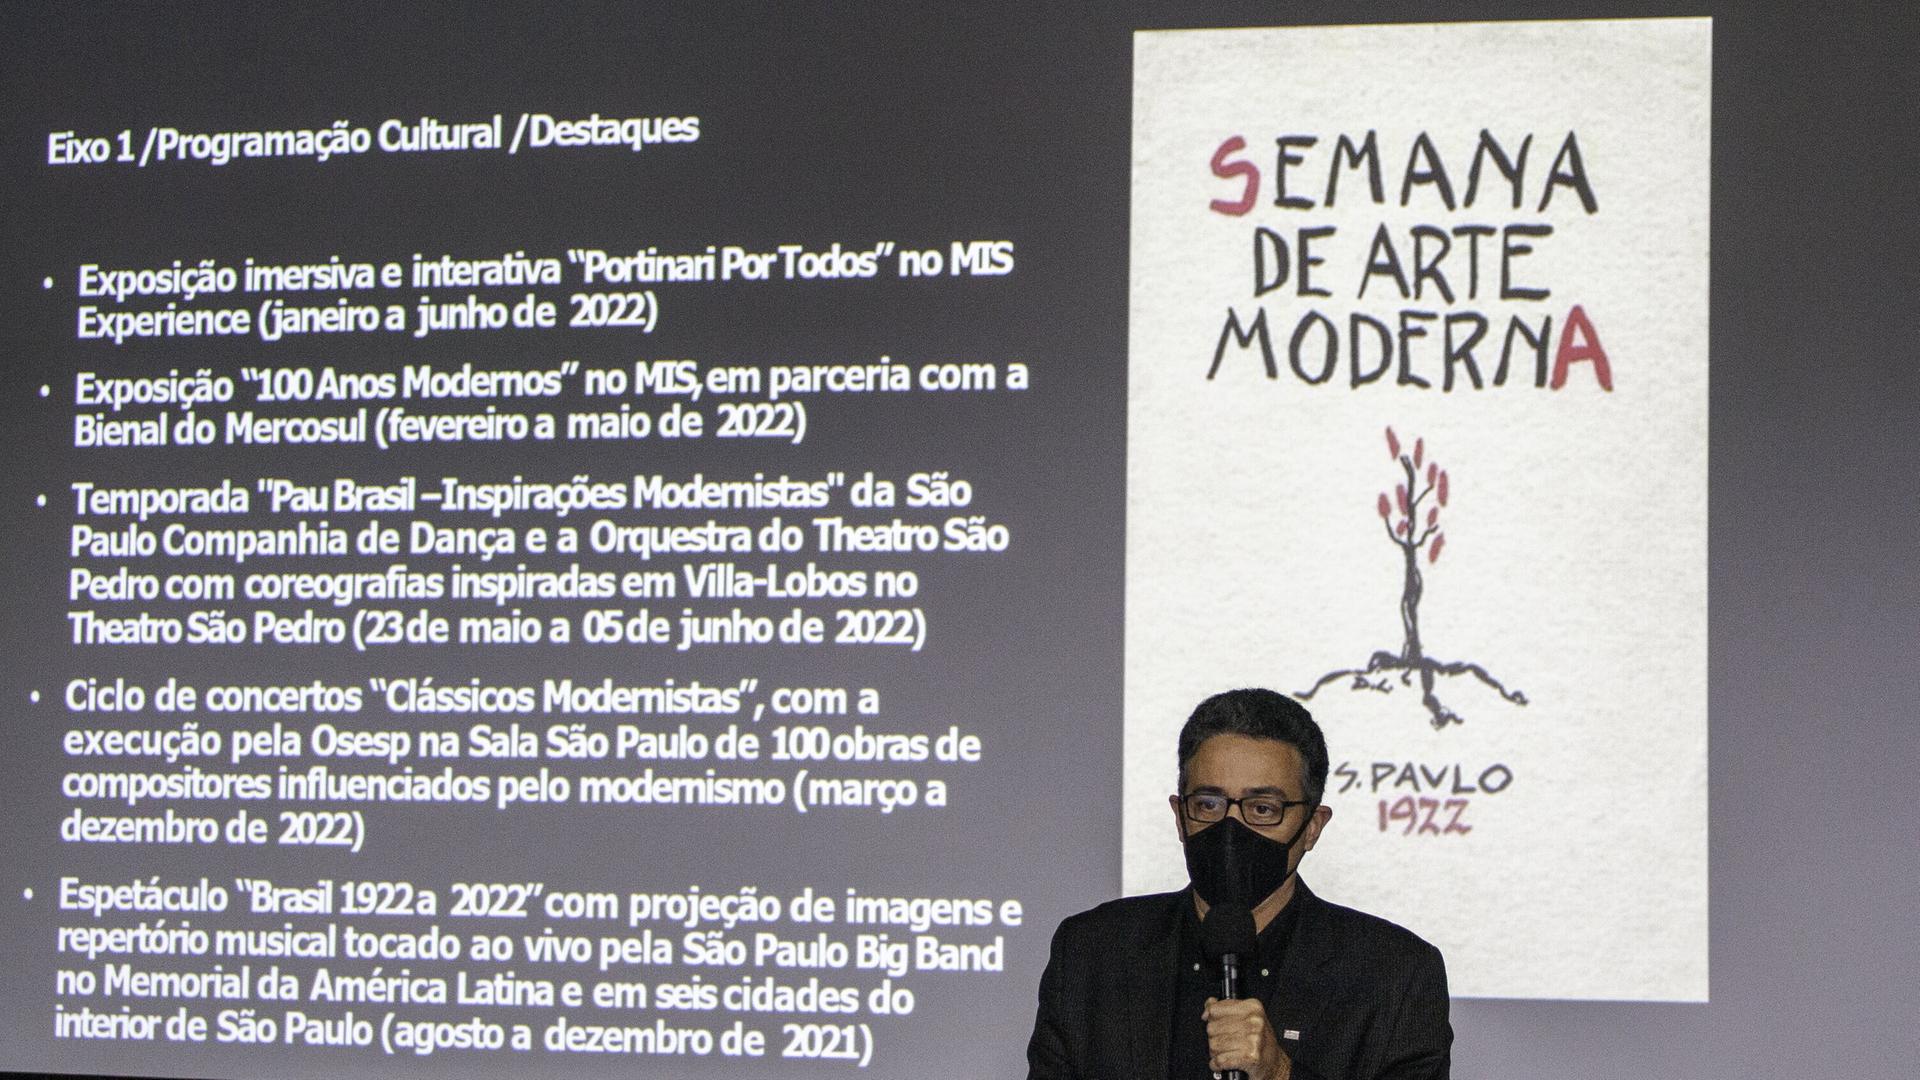 Sao Paulos Kultur-Sekretär Sergio Sa, 2021 bei der Präsentation der millionenschweren Feiern zum Gedenken der Semana de Arte Moderna vor hundert Jahren